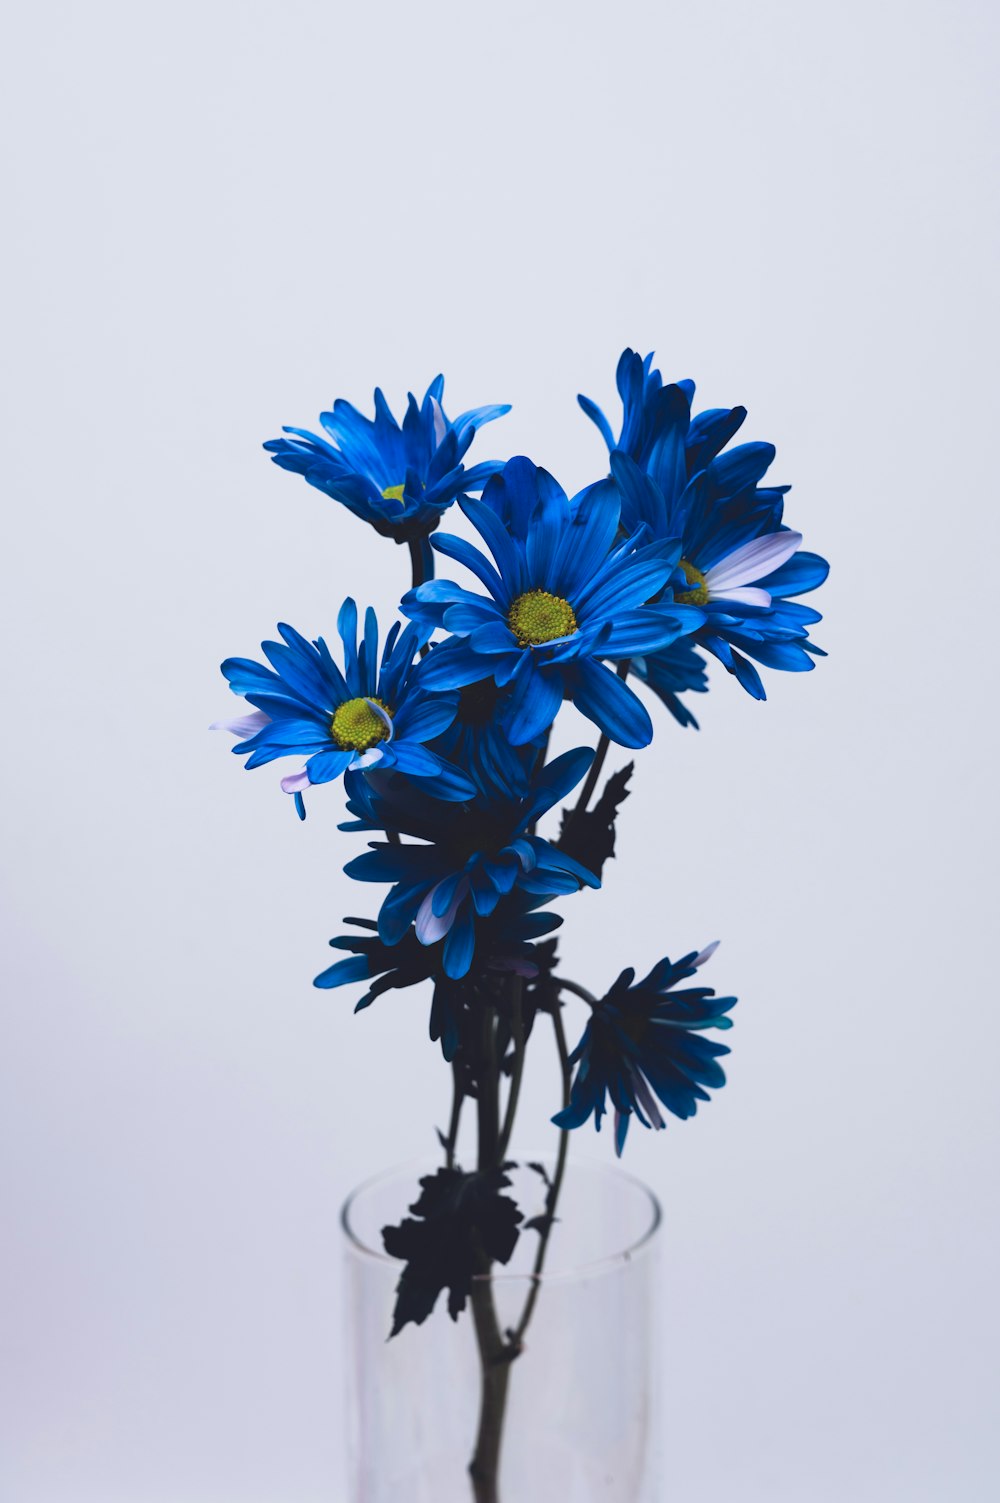 flores azuis e brancas no fundo branco